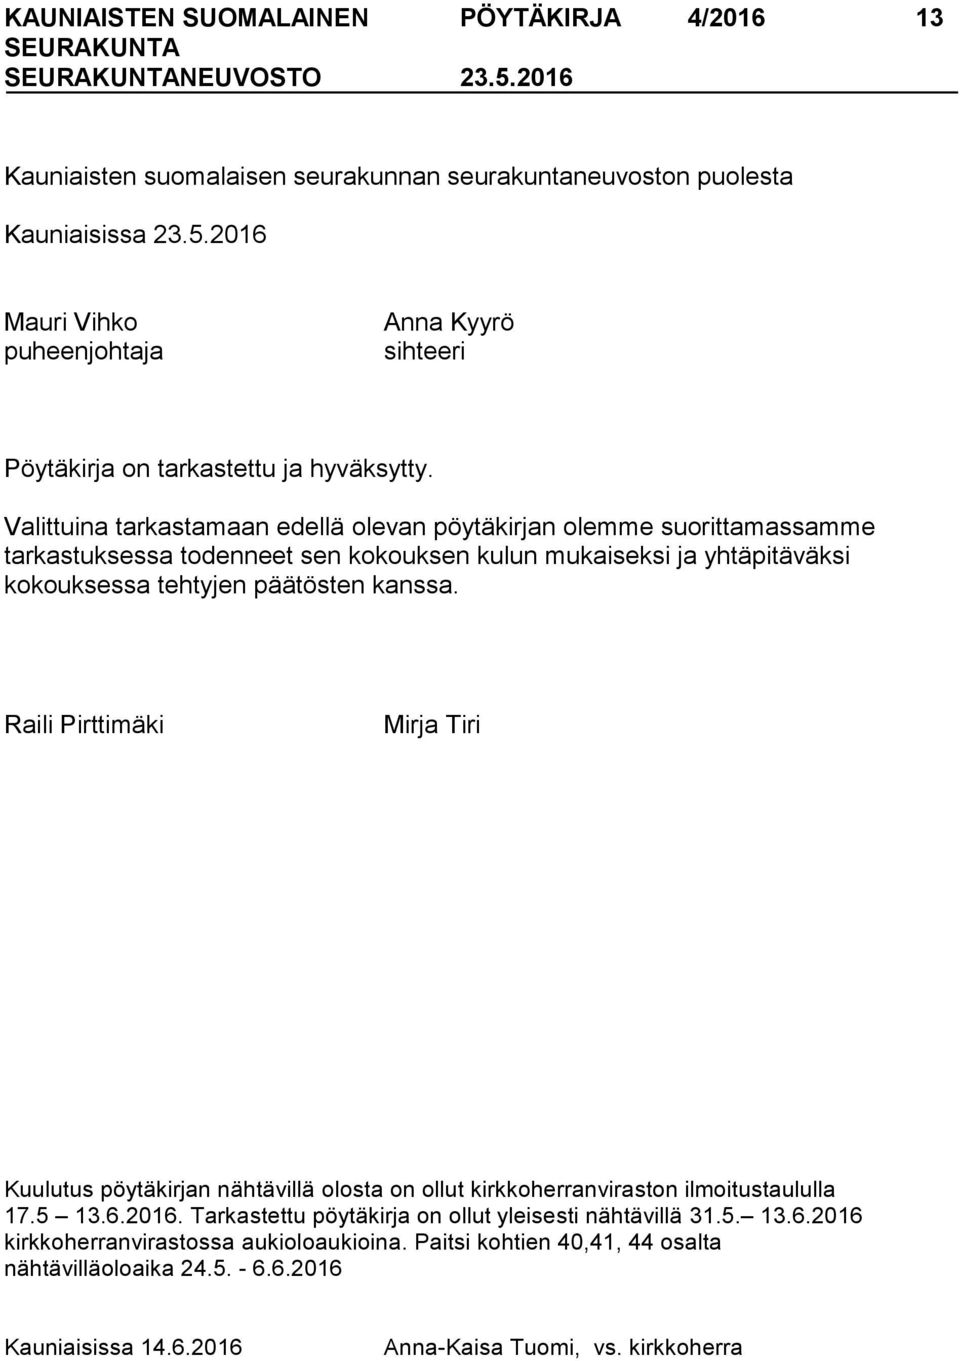 Raili Pirttimäki Mirja Tiri Kuulutus pöytäkirjan nähtävillä olosta on ollut kirkkoherranviraston ilmoitustaululla 17.5 13.6.2016. Tarkastettu pöytäkirja on ollut yleisesti nähtävillä 31.5. 13.6.2016 kirkkoherranvirastossa aukioloaukioina.